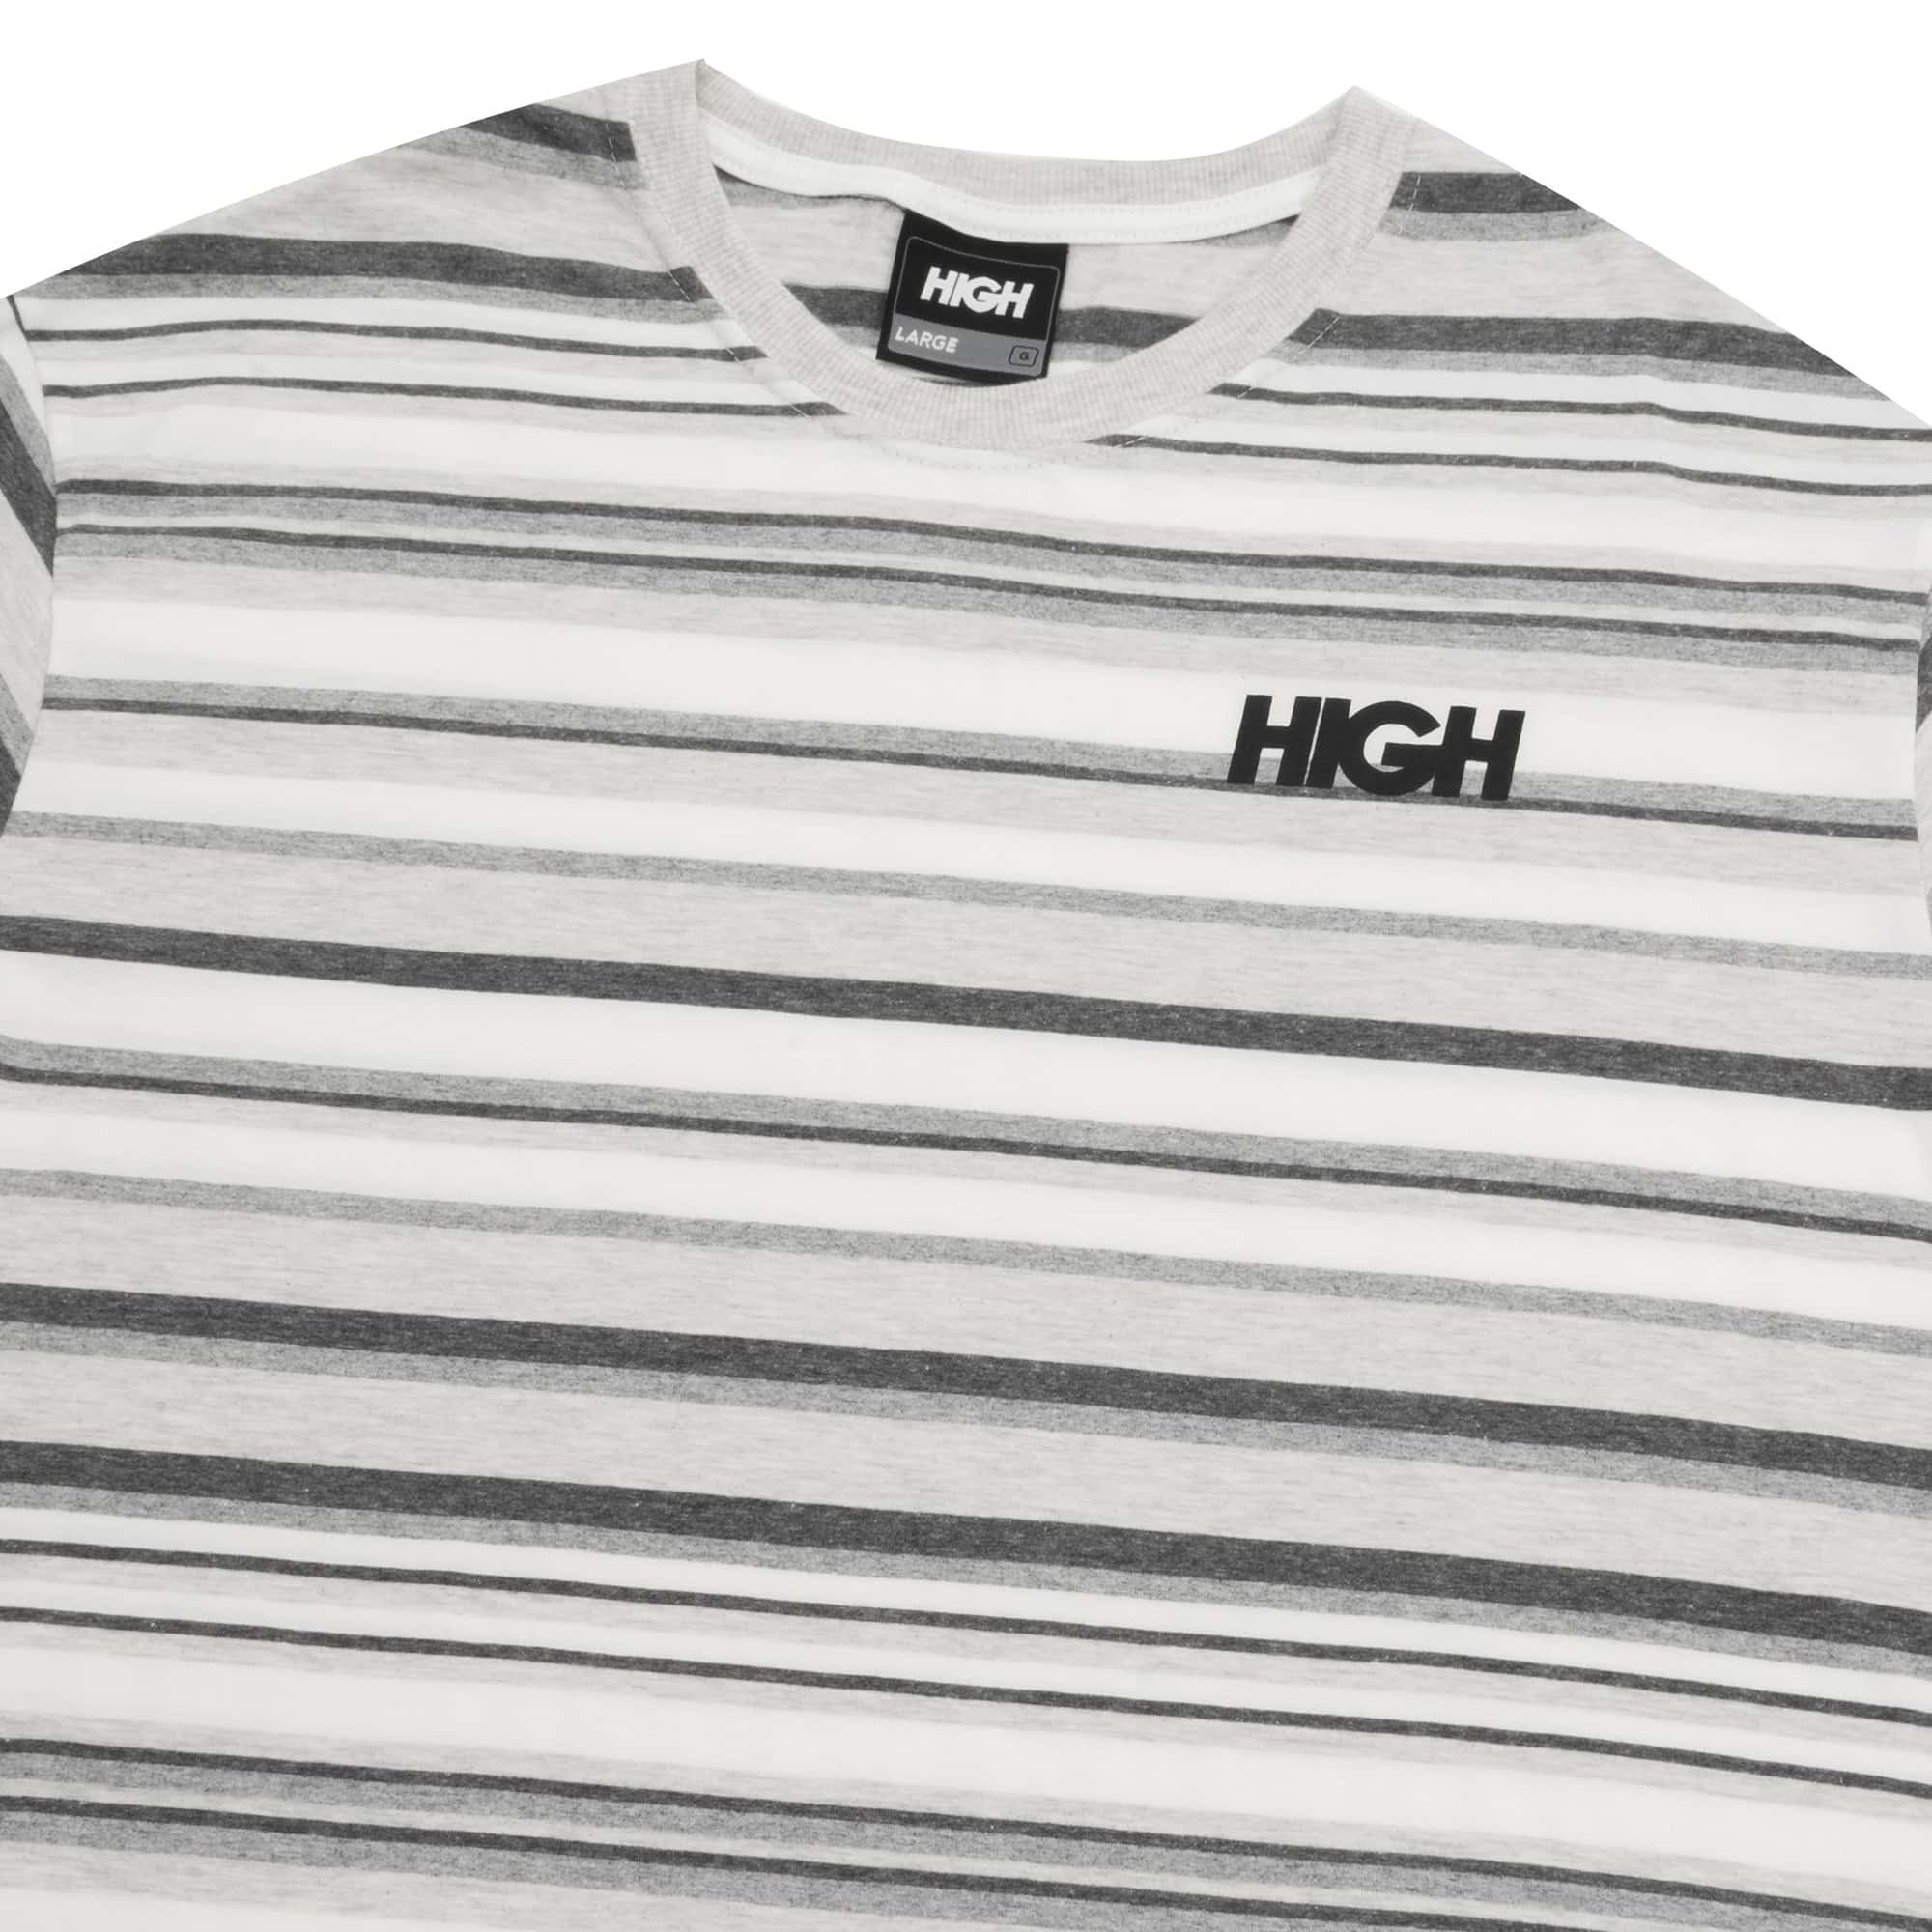 Camiseta High Kidz Glitch Rose - Base Sneakers - Tênis, Roupas,  Acessórios e muito mais!